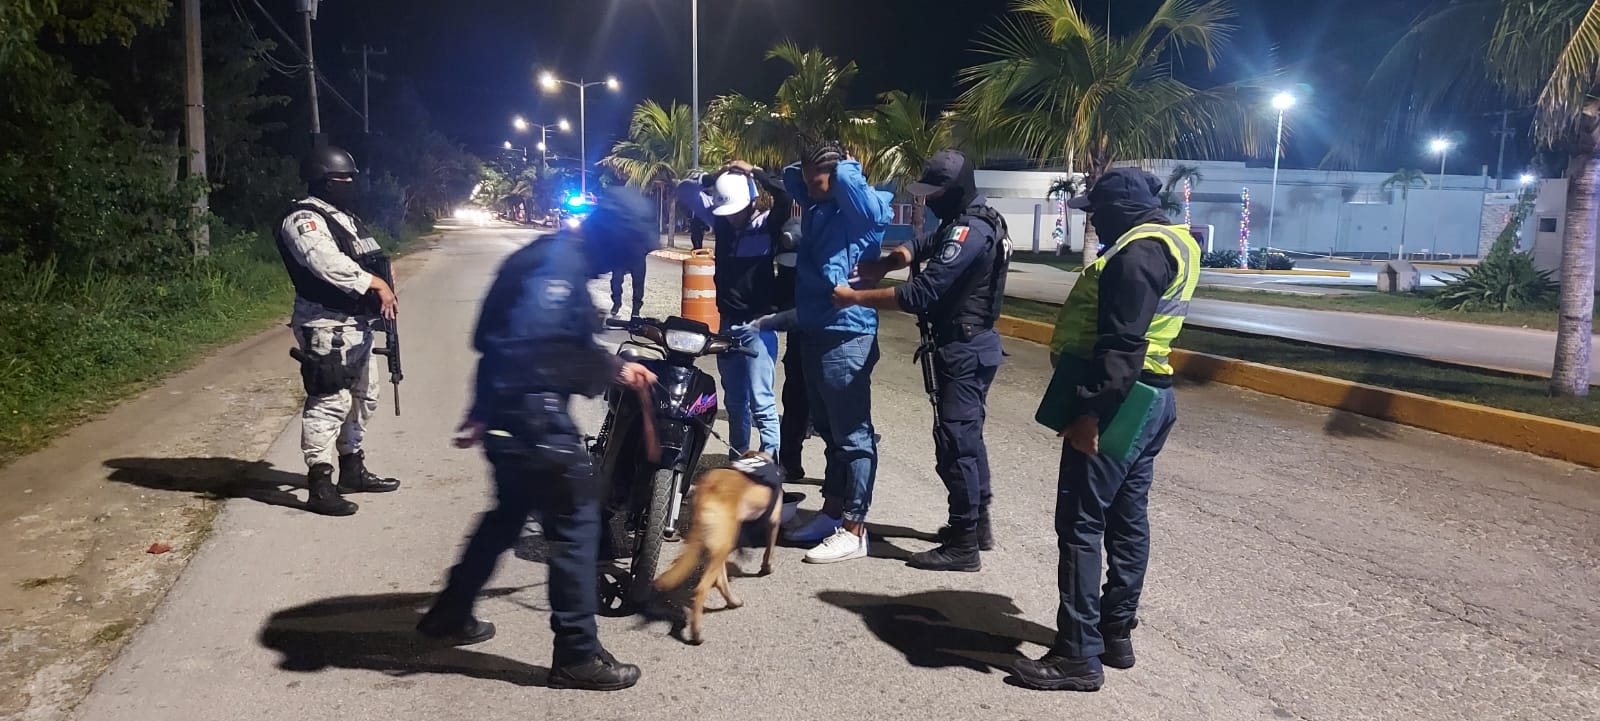 Sin detenciones, culmina operativo de seguridad por festejos navideños en Cozumel